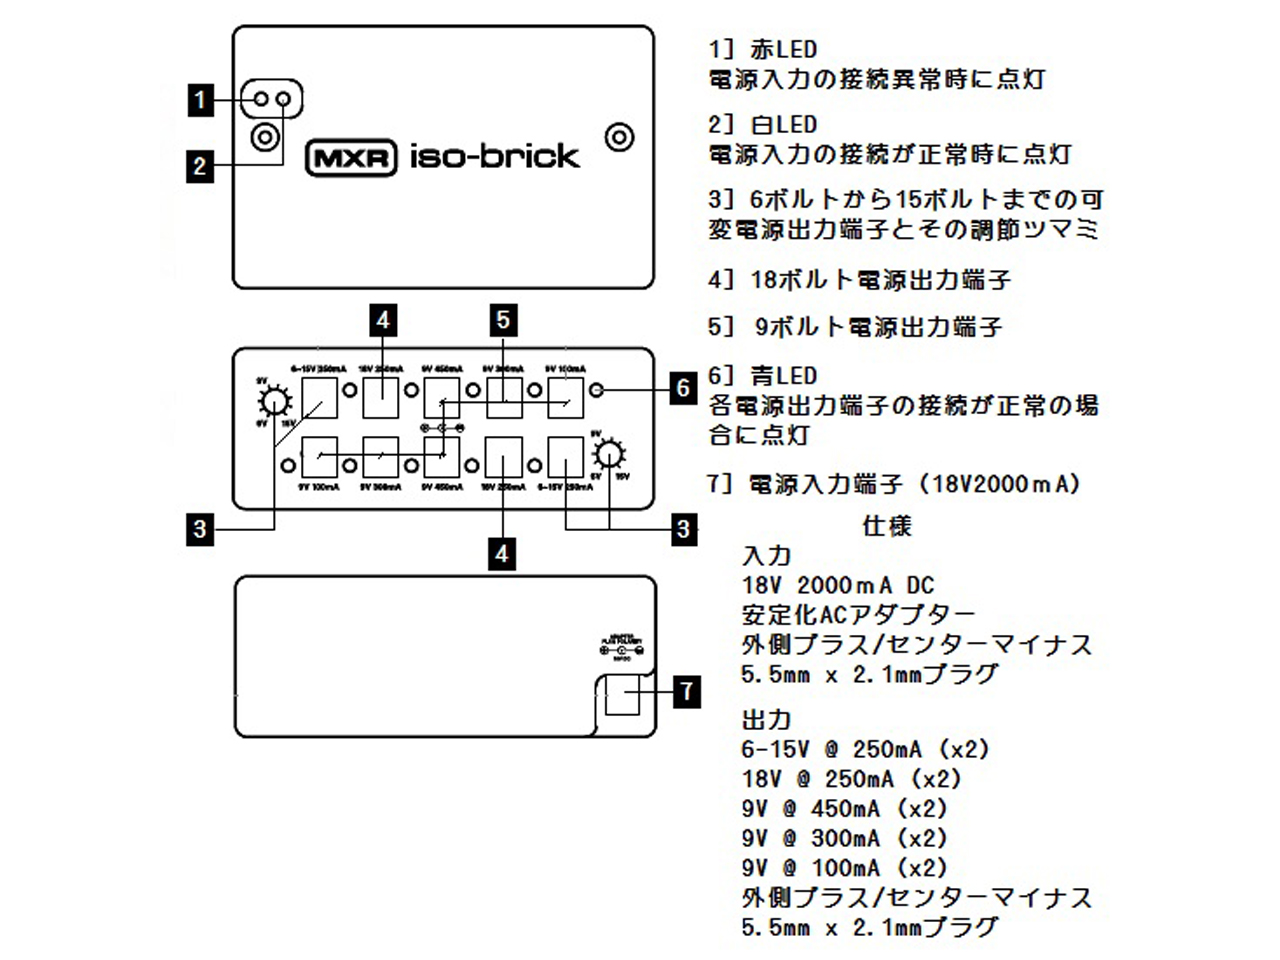 MXR(エムエックスアール) M238 Iso-Brick Power Supply (パワーサプライ) お茶の水駅前店(東京)